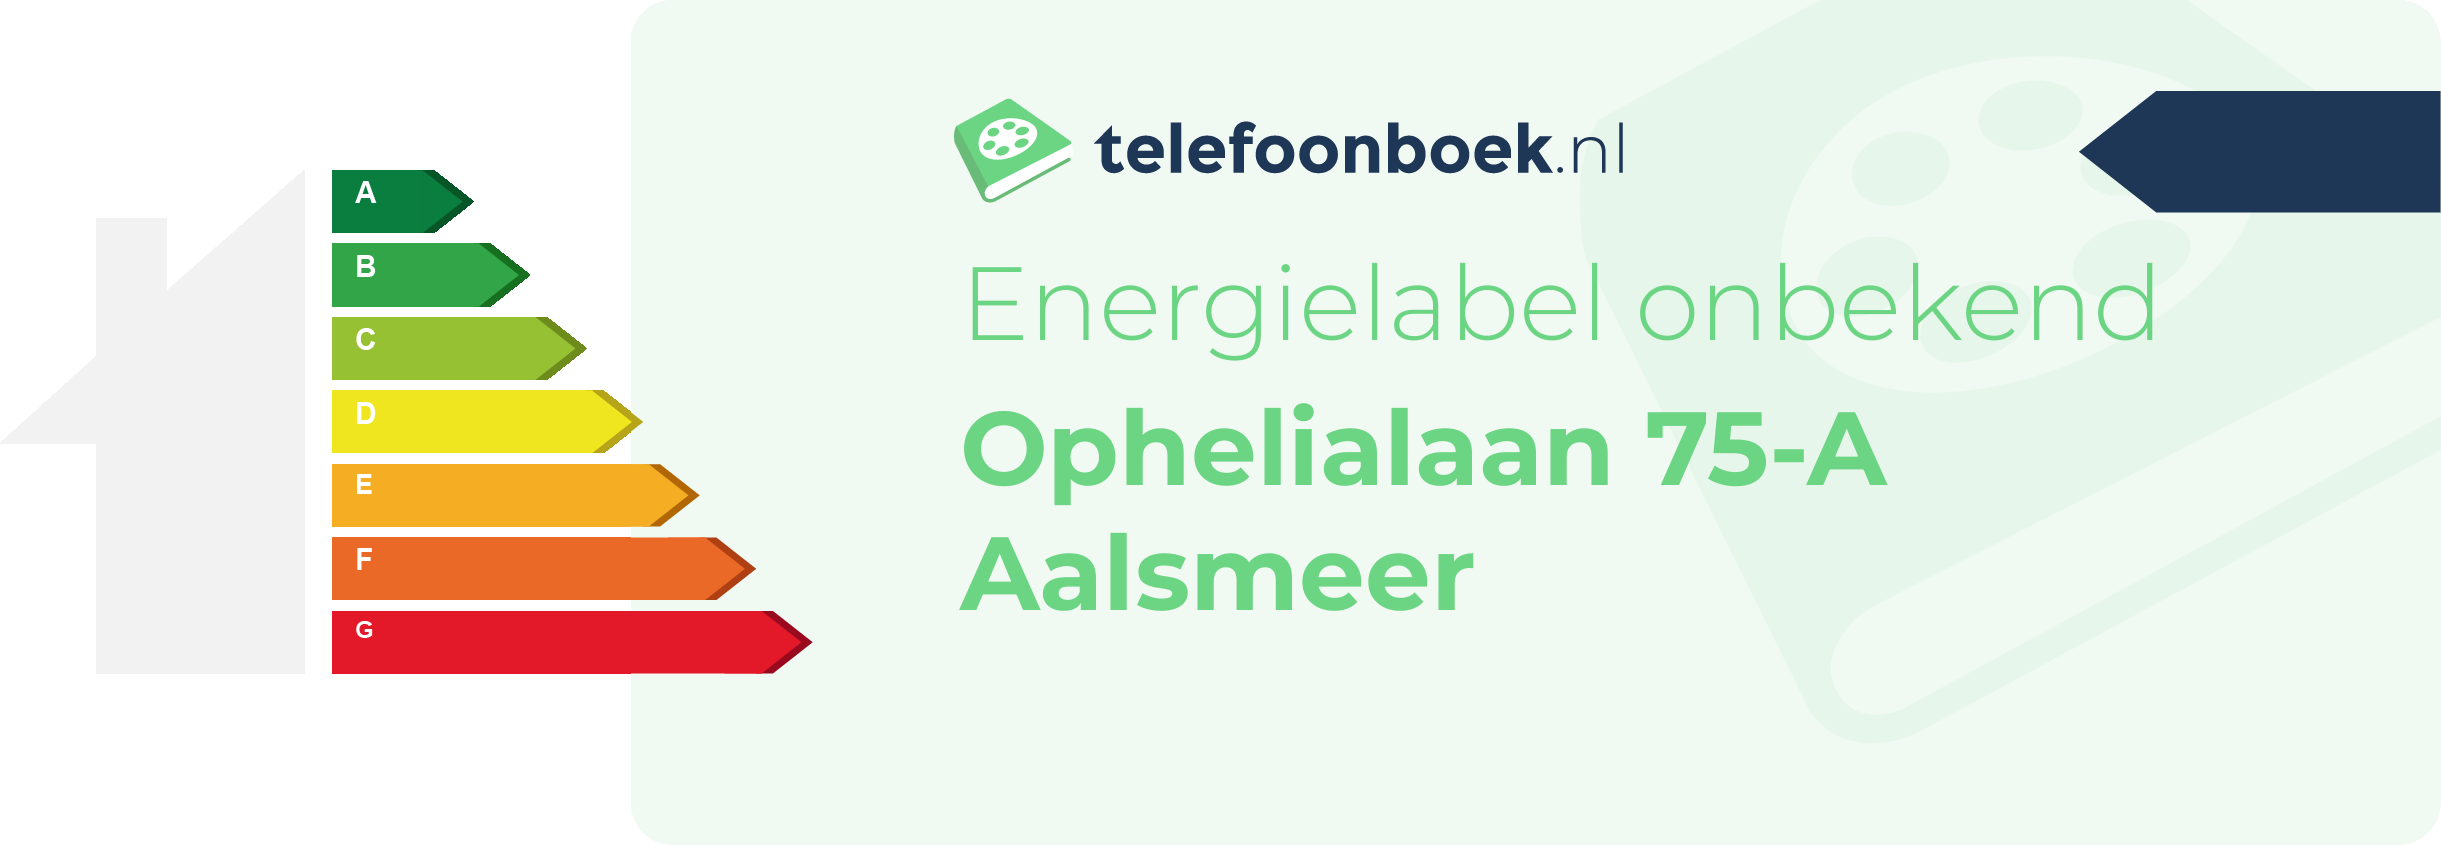 Energielabel Ophelialaan 75-A Aalsmeer